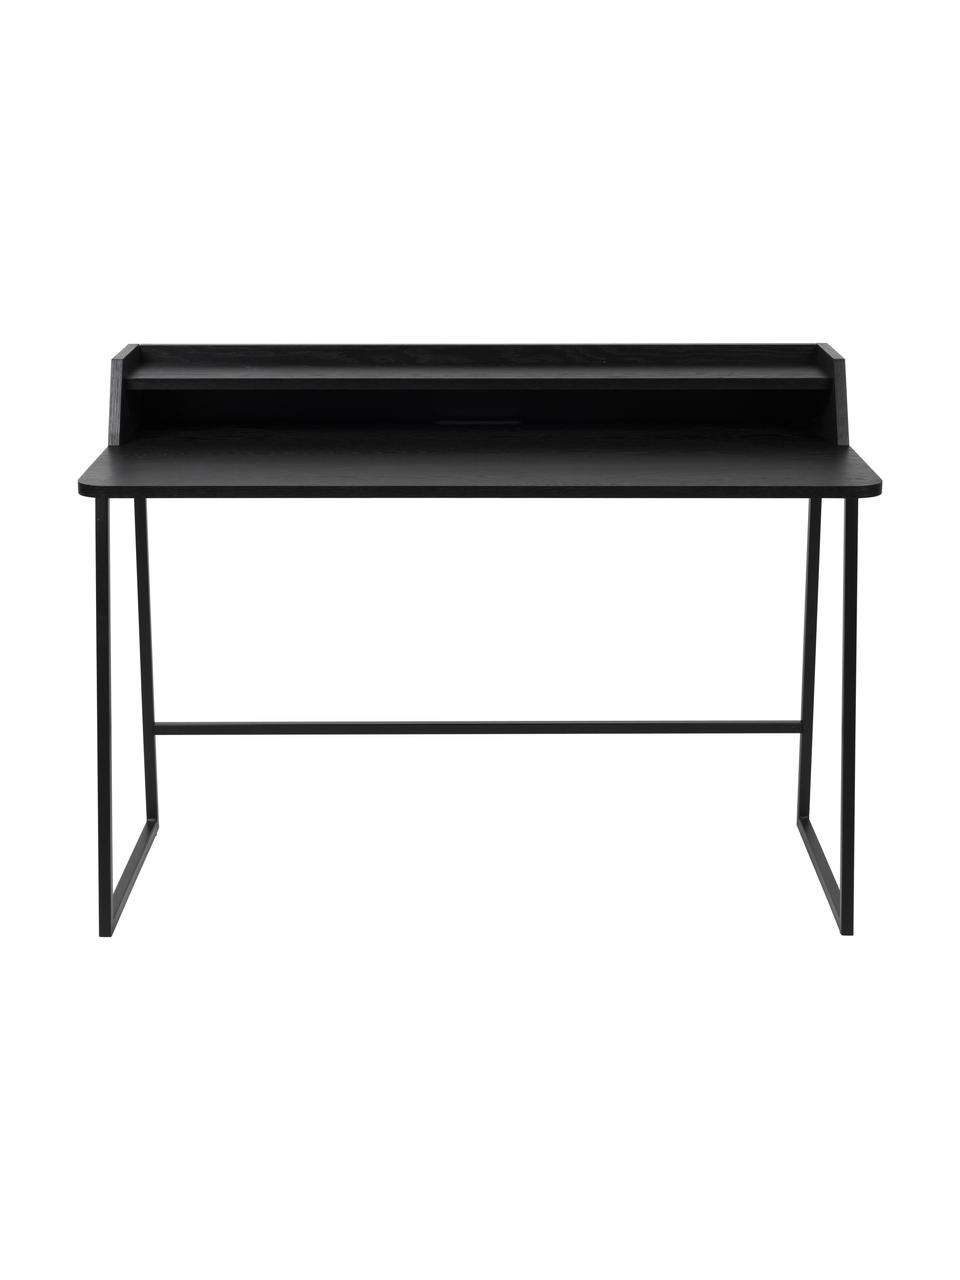 Schreibtisch Giorgio aus Holz und Metall, Gestell: Metall, pulverbeschichtet, Holz, schwarz lackiert, B 120 x T 60 cm